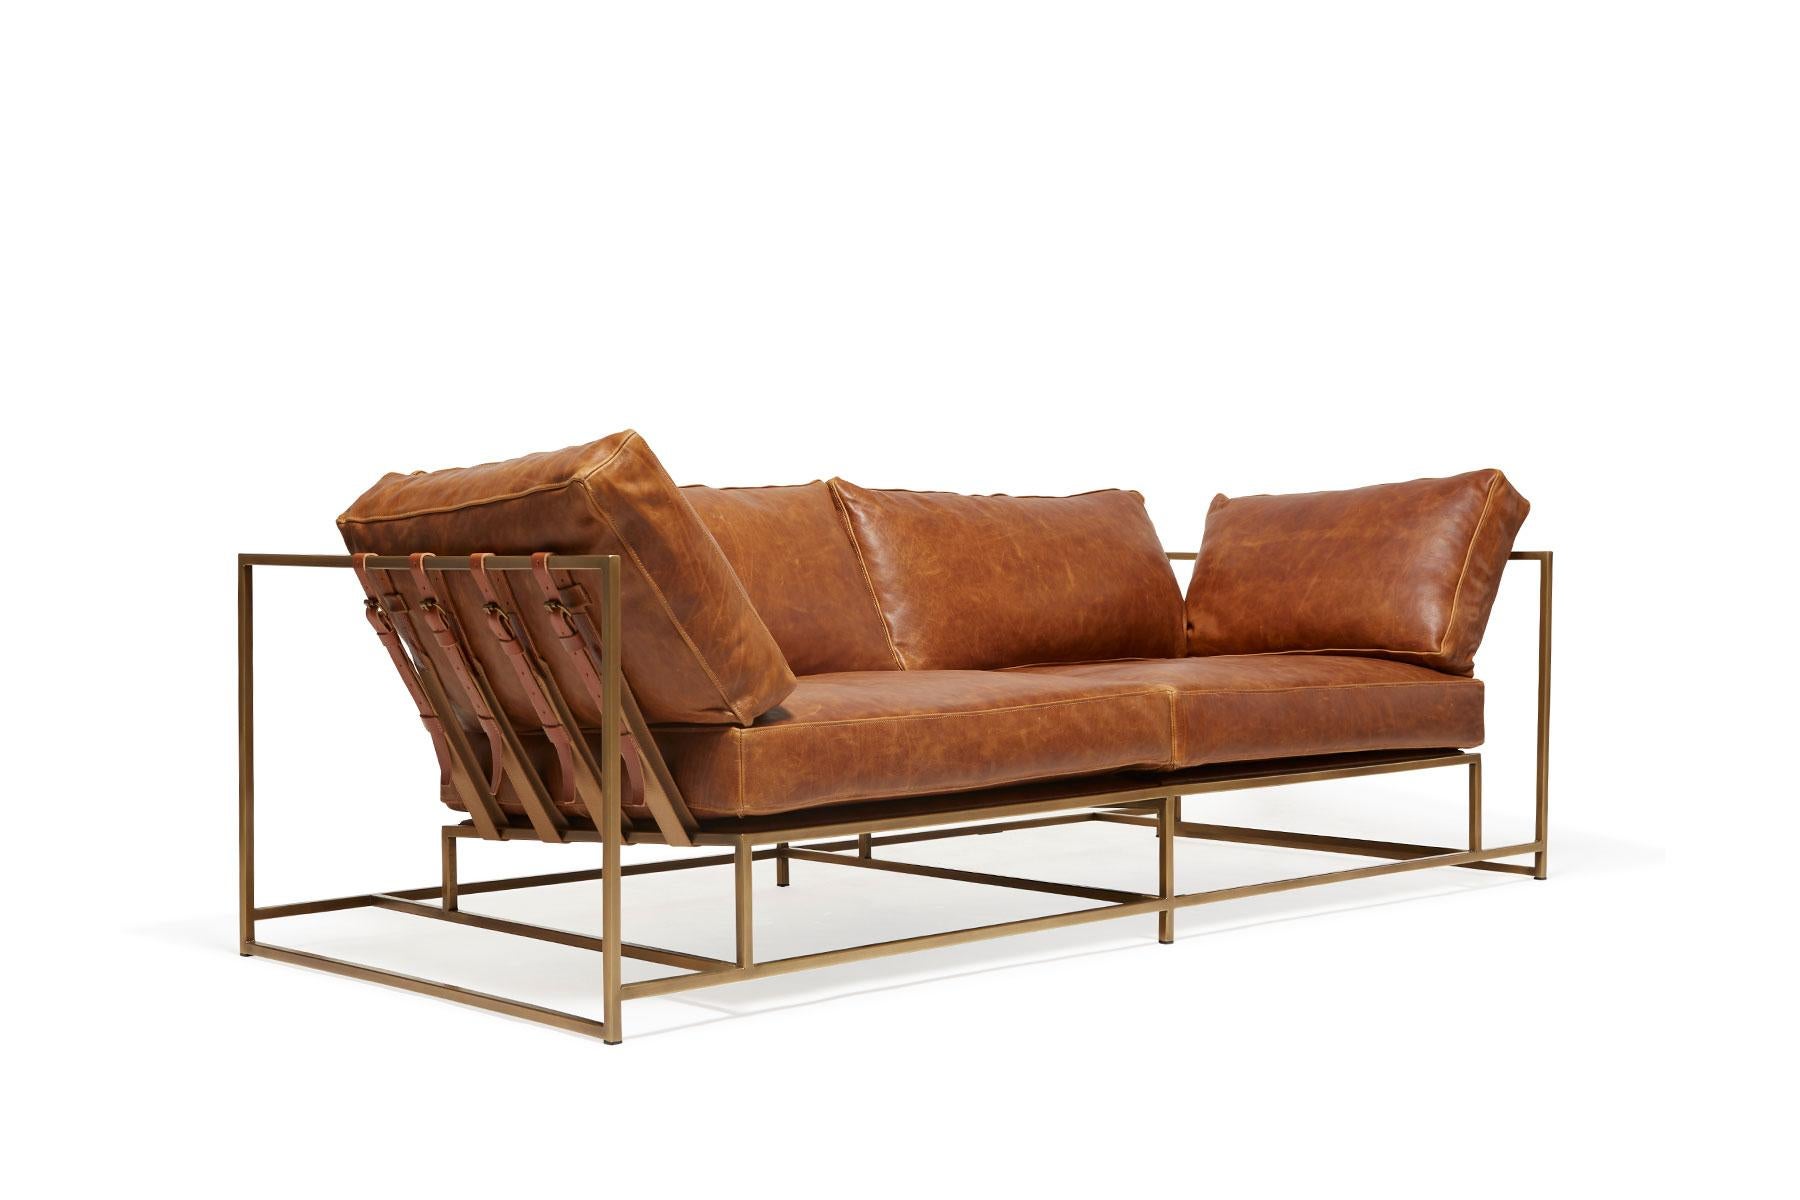 Das Zweisitzer-Sofa aus der Inheritance-Kollektion von Stephen Kenn ist ideal für Wohnungen oder kleinere Räume, die eine geringere Stellfläche erfordern.

Diese Variante ist mit einem schönen gewachsten hellbraunen Leder aus der